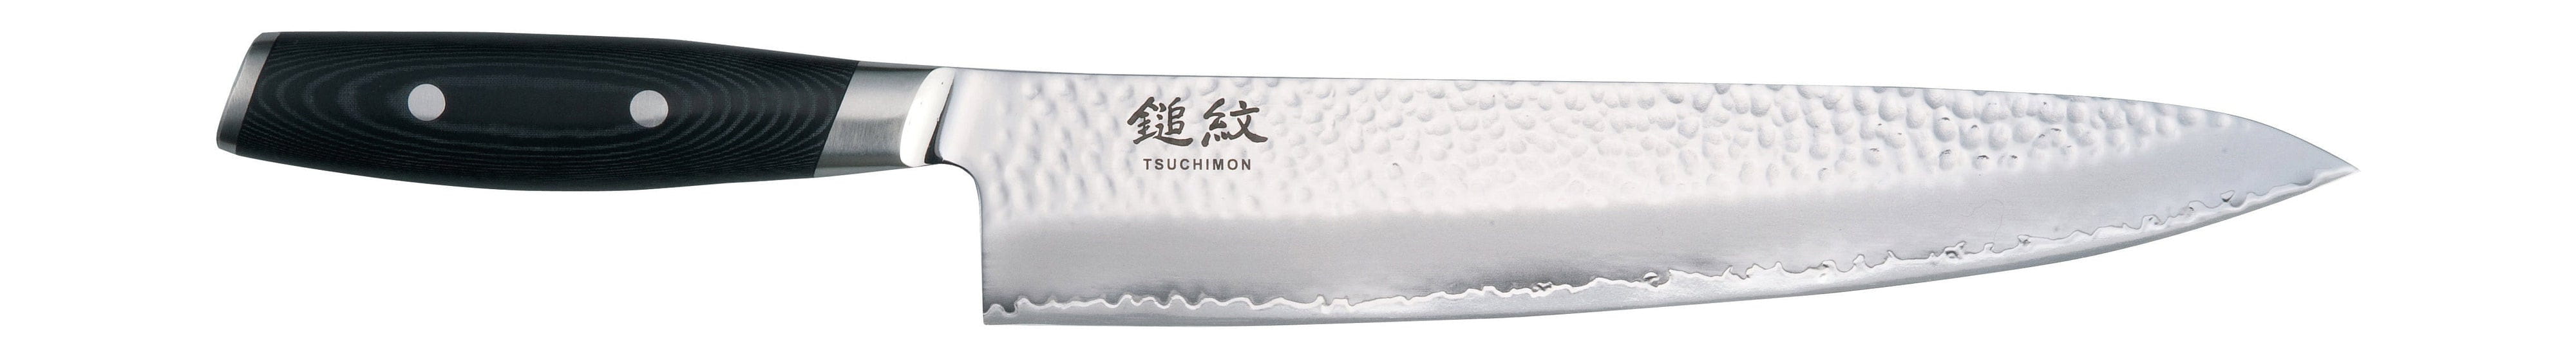 Yaxell Tsuchimon Chefův nůž, 25,5 cm